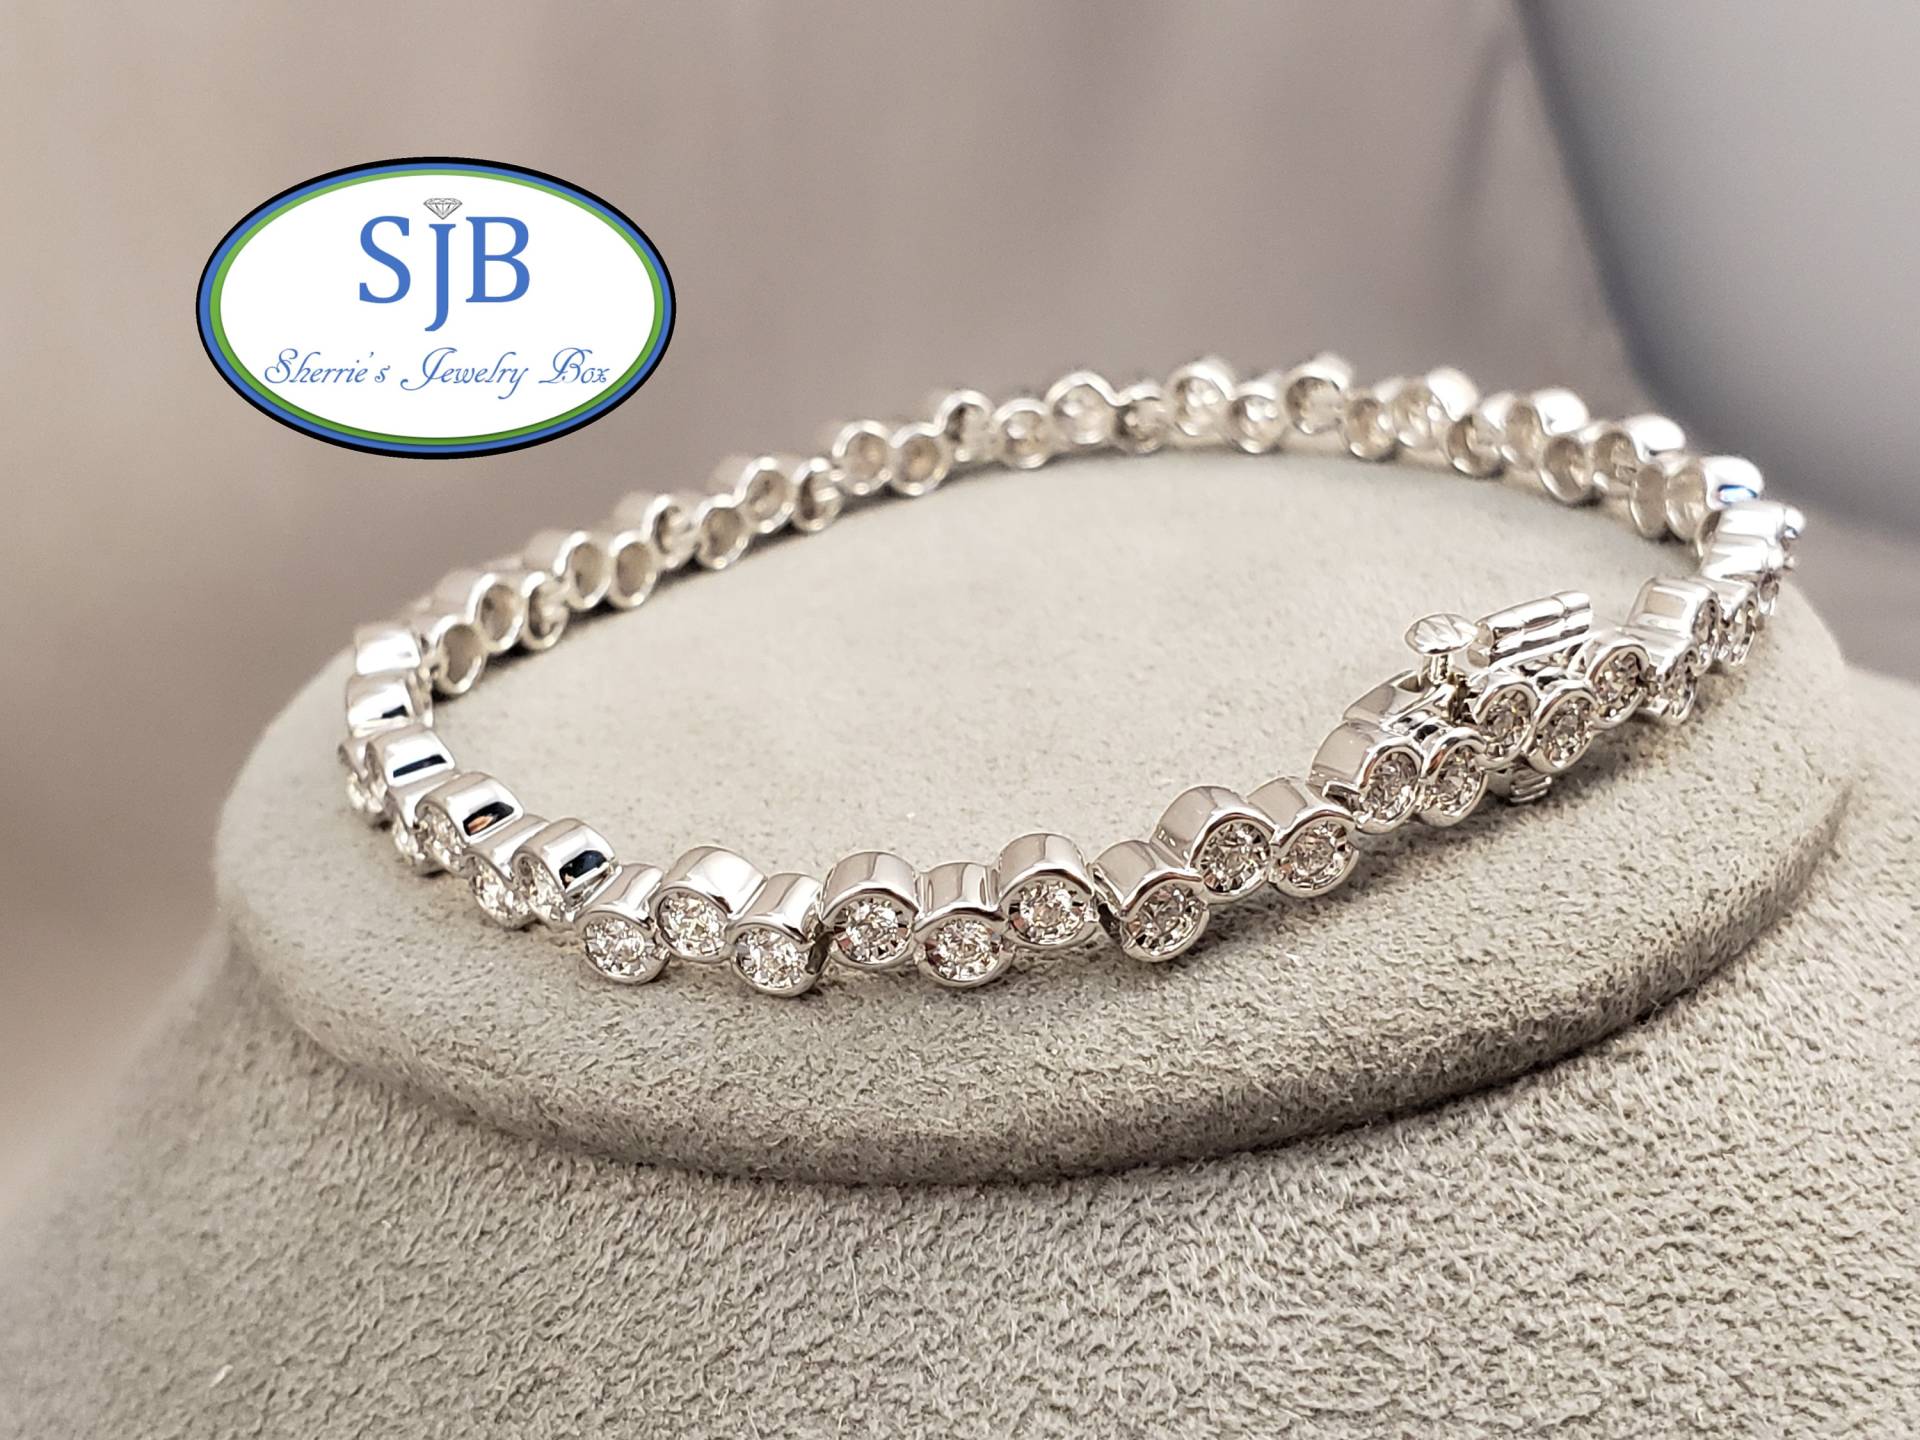 Diamant Armbänder, 14K Weißgold Armband, Lünette Set Jubiläum Stapelbare April Birthstone, # B271 von SherriesJewelryBox